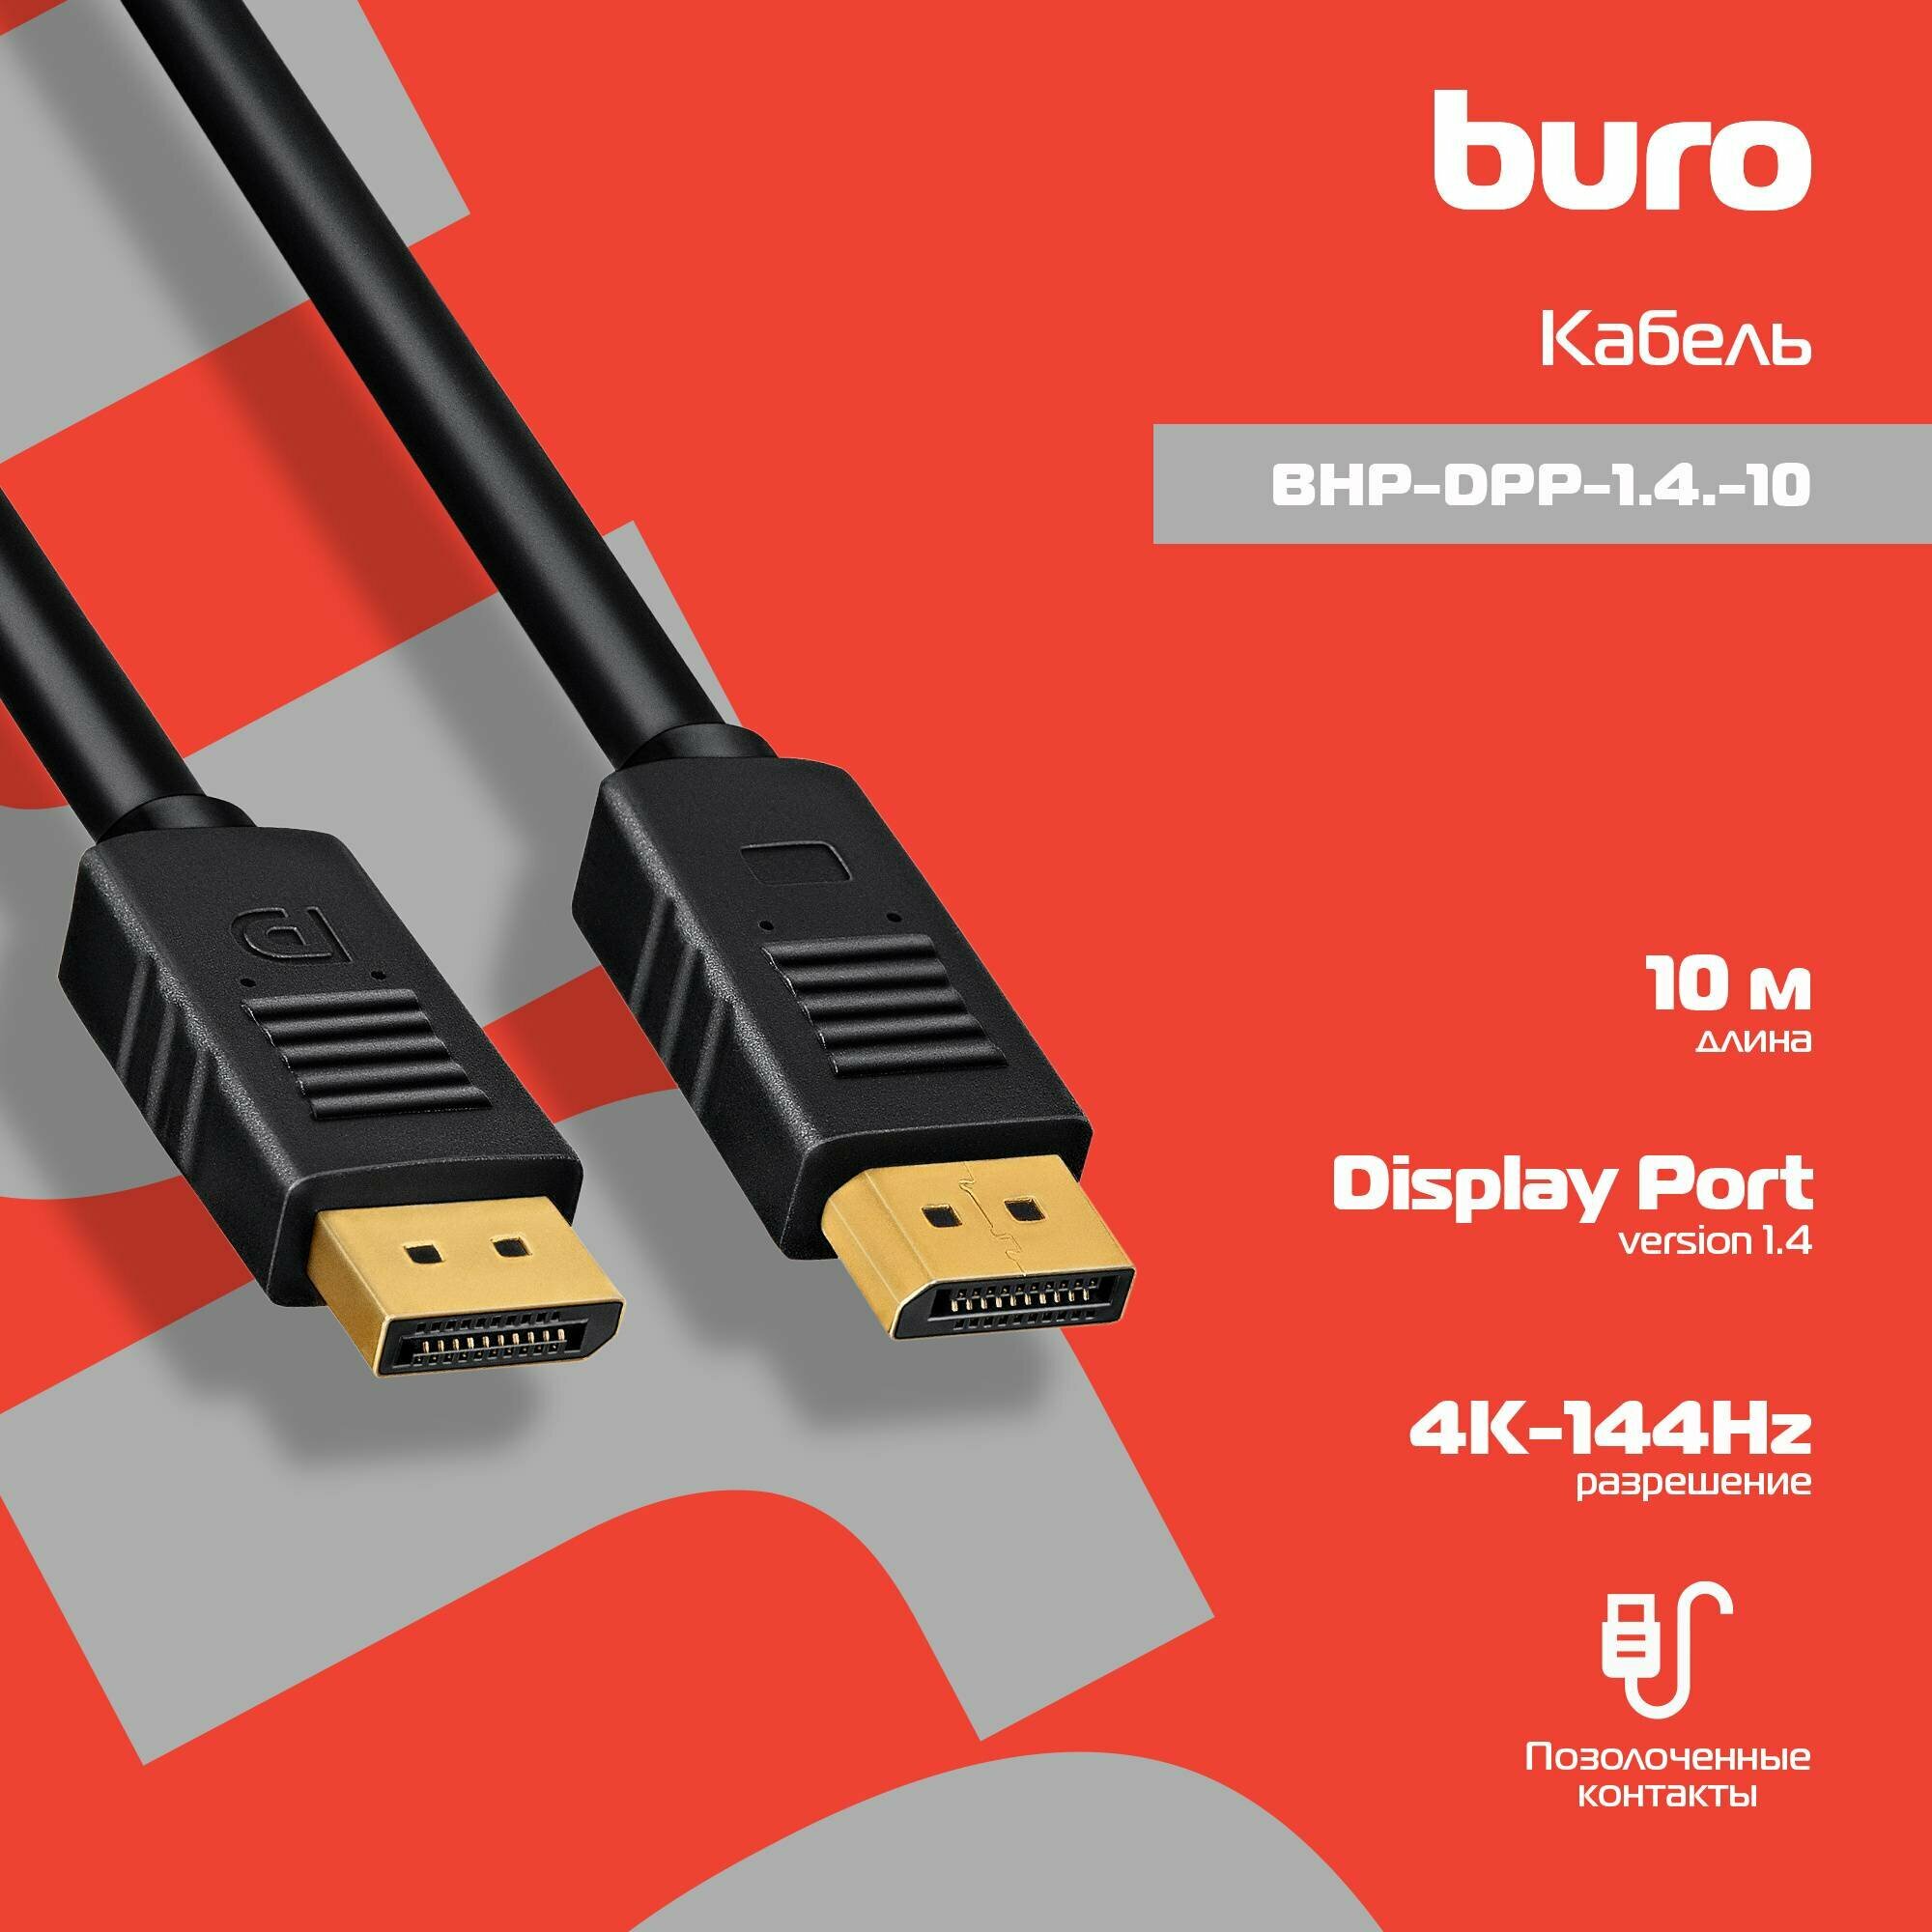 Кабель аудио-видео Buro BHP-DPP-1.4-10 DisplayPort (m)/DisplayPort (m) длина 10 м цвет черный (1478870)